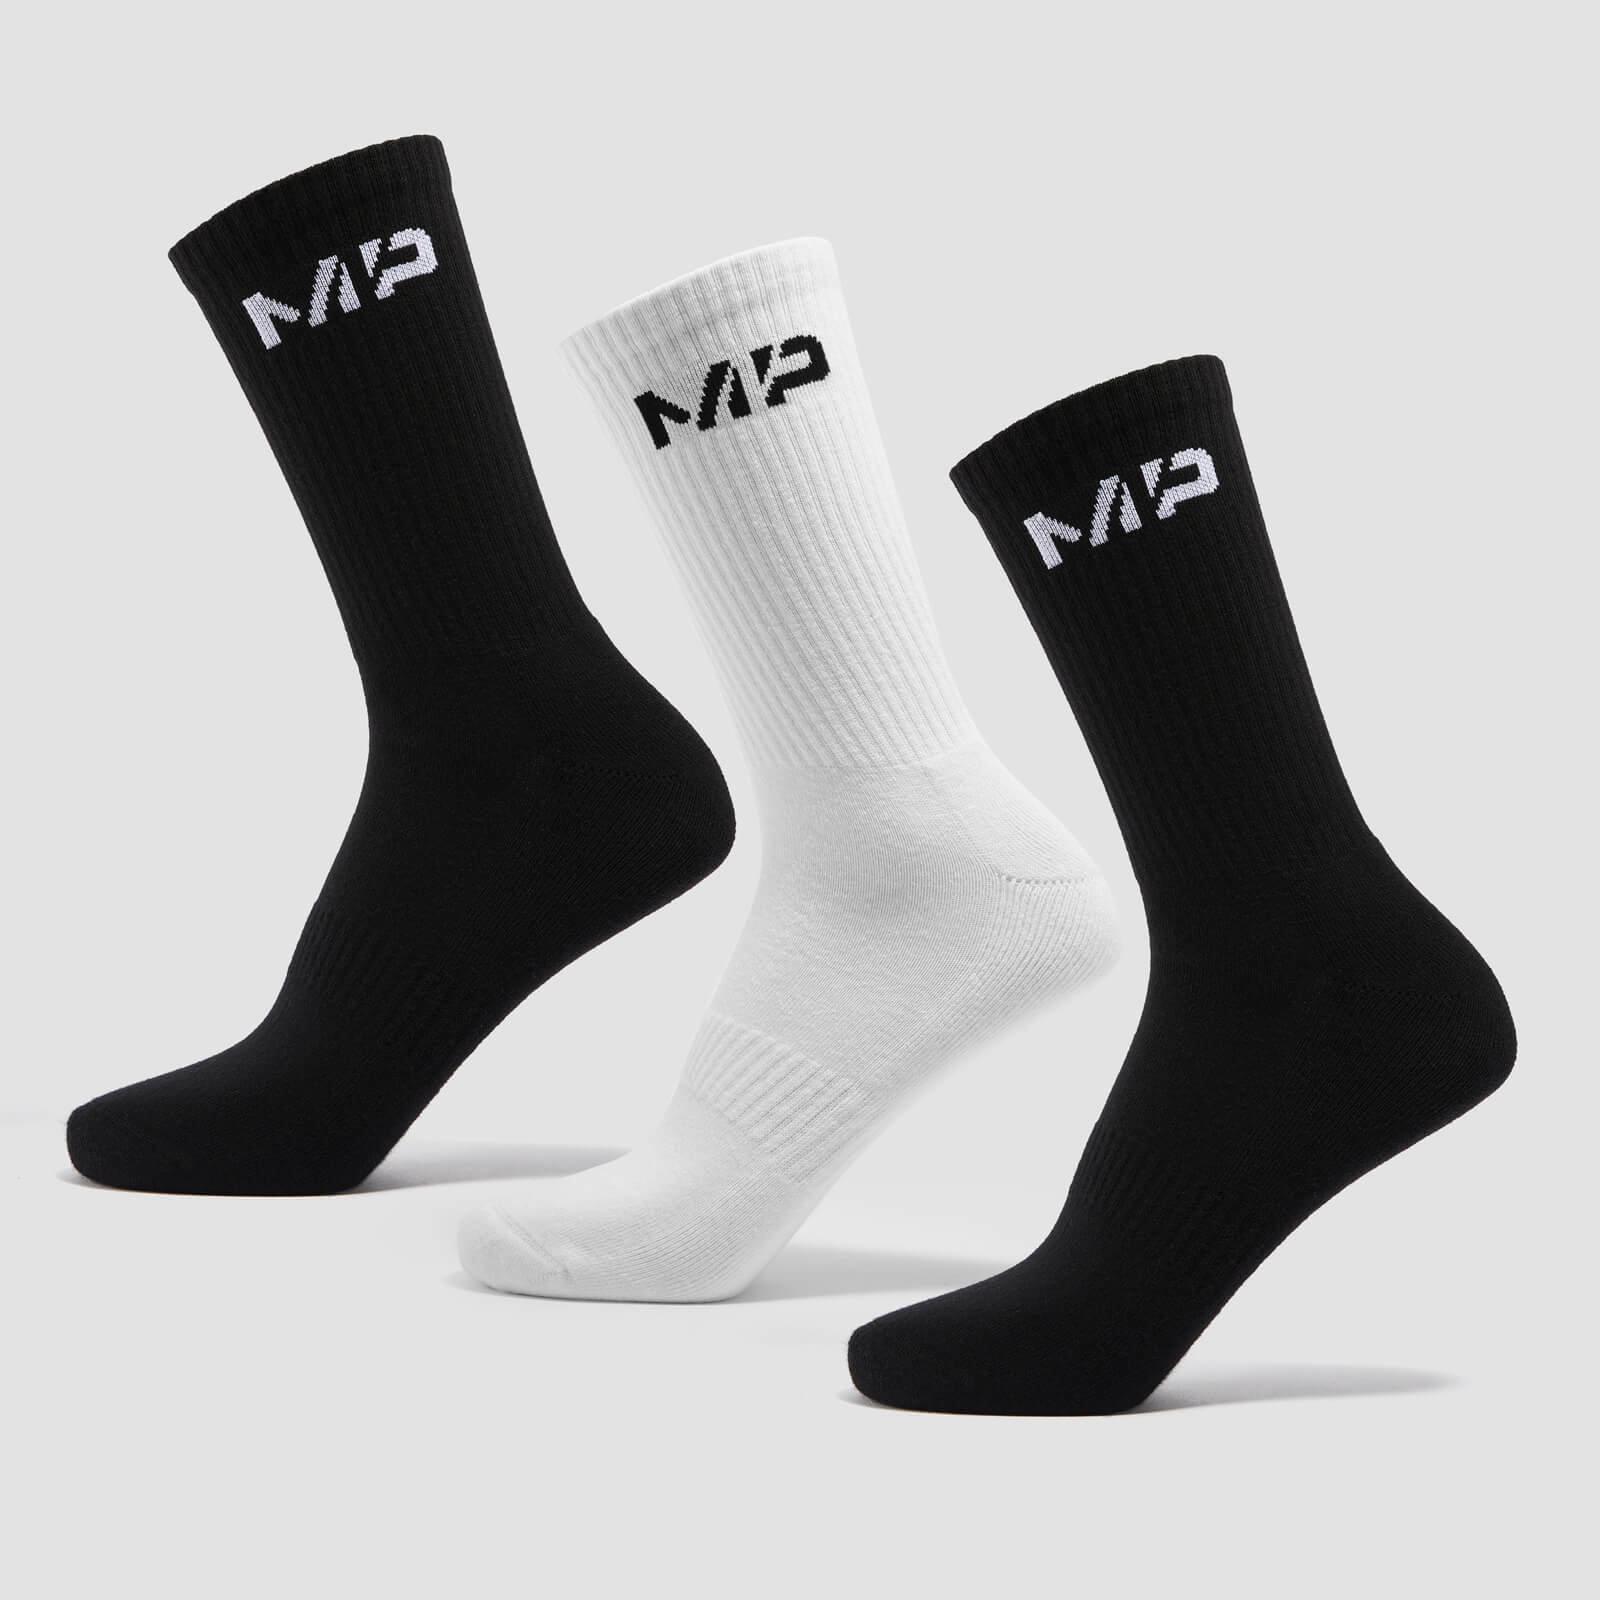 MP Unisex Crew Socks (3 pack) - Black/White - UK 9-11